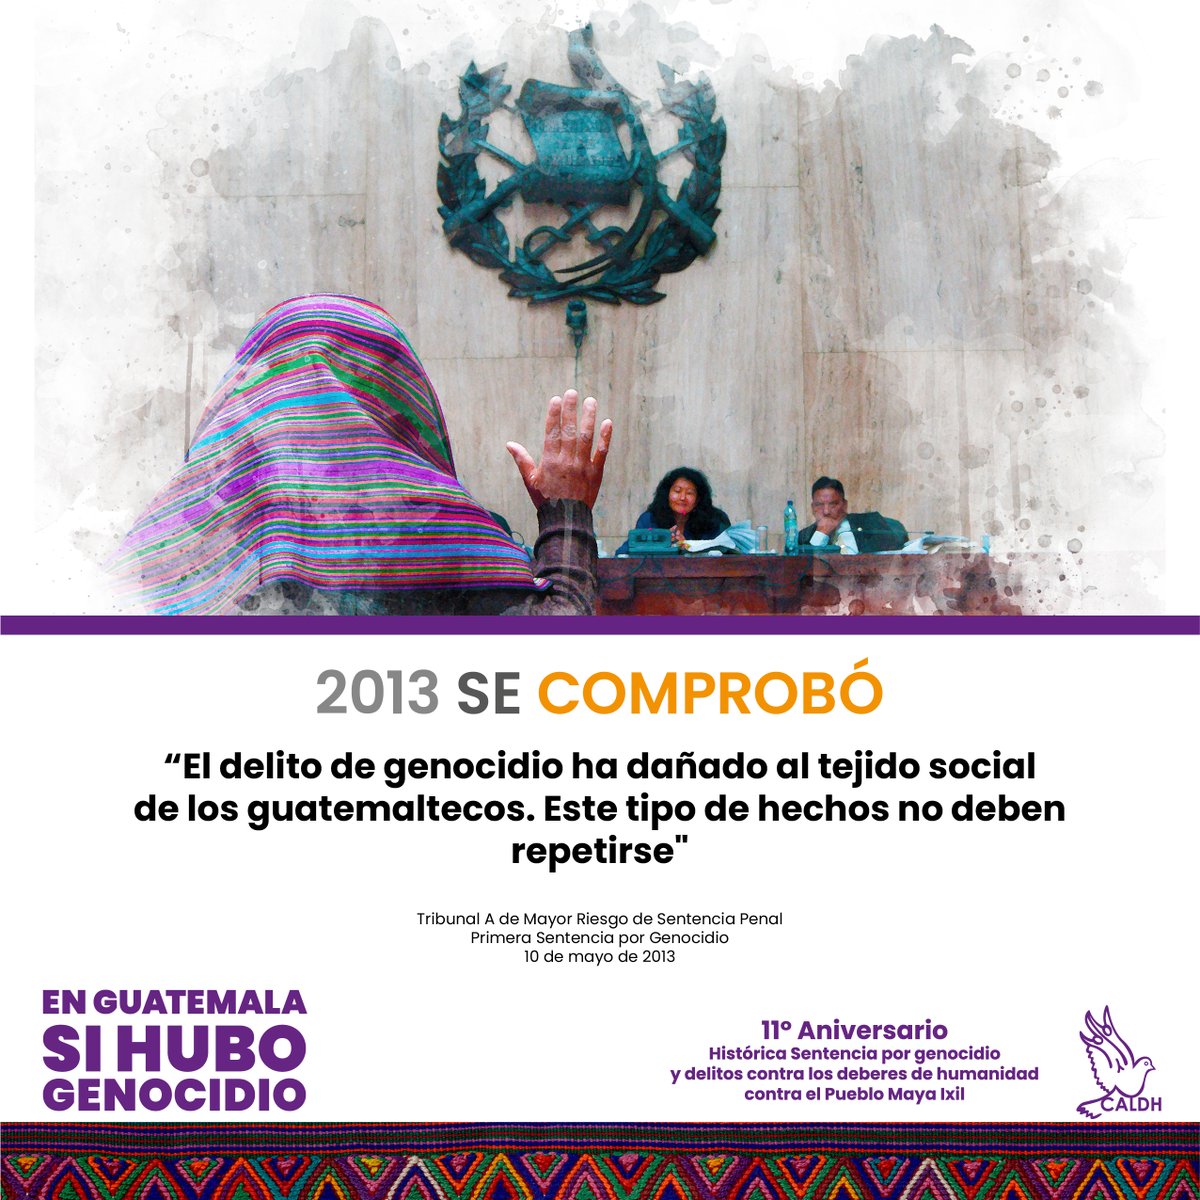 “El delito de genocidio ha dañado al tejido social de los guatemaltecos. Este tipo de hechos no deben repetirse' Tribunal A de Mayor Riesgo de Sentencia Penal 10 de mayo de 2013 EN #GUATEMALA #SIHUBOGENOCIDIO